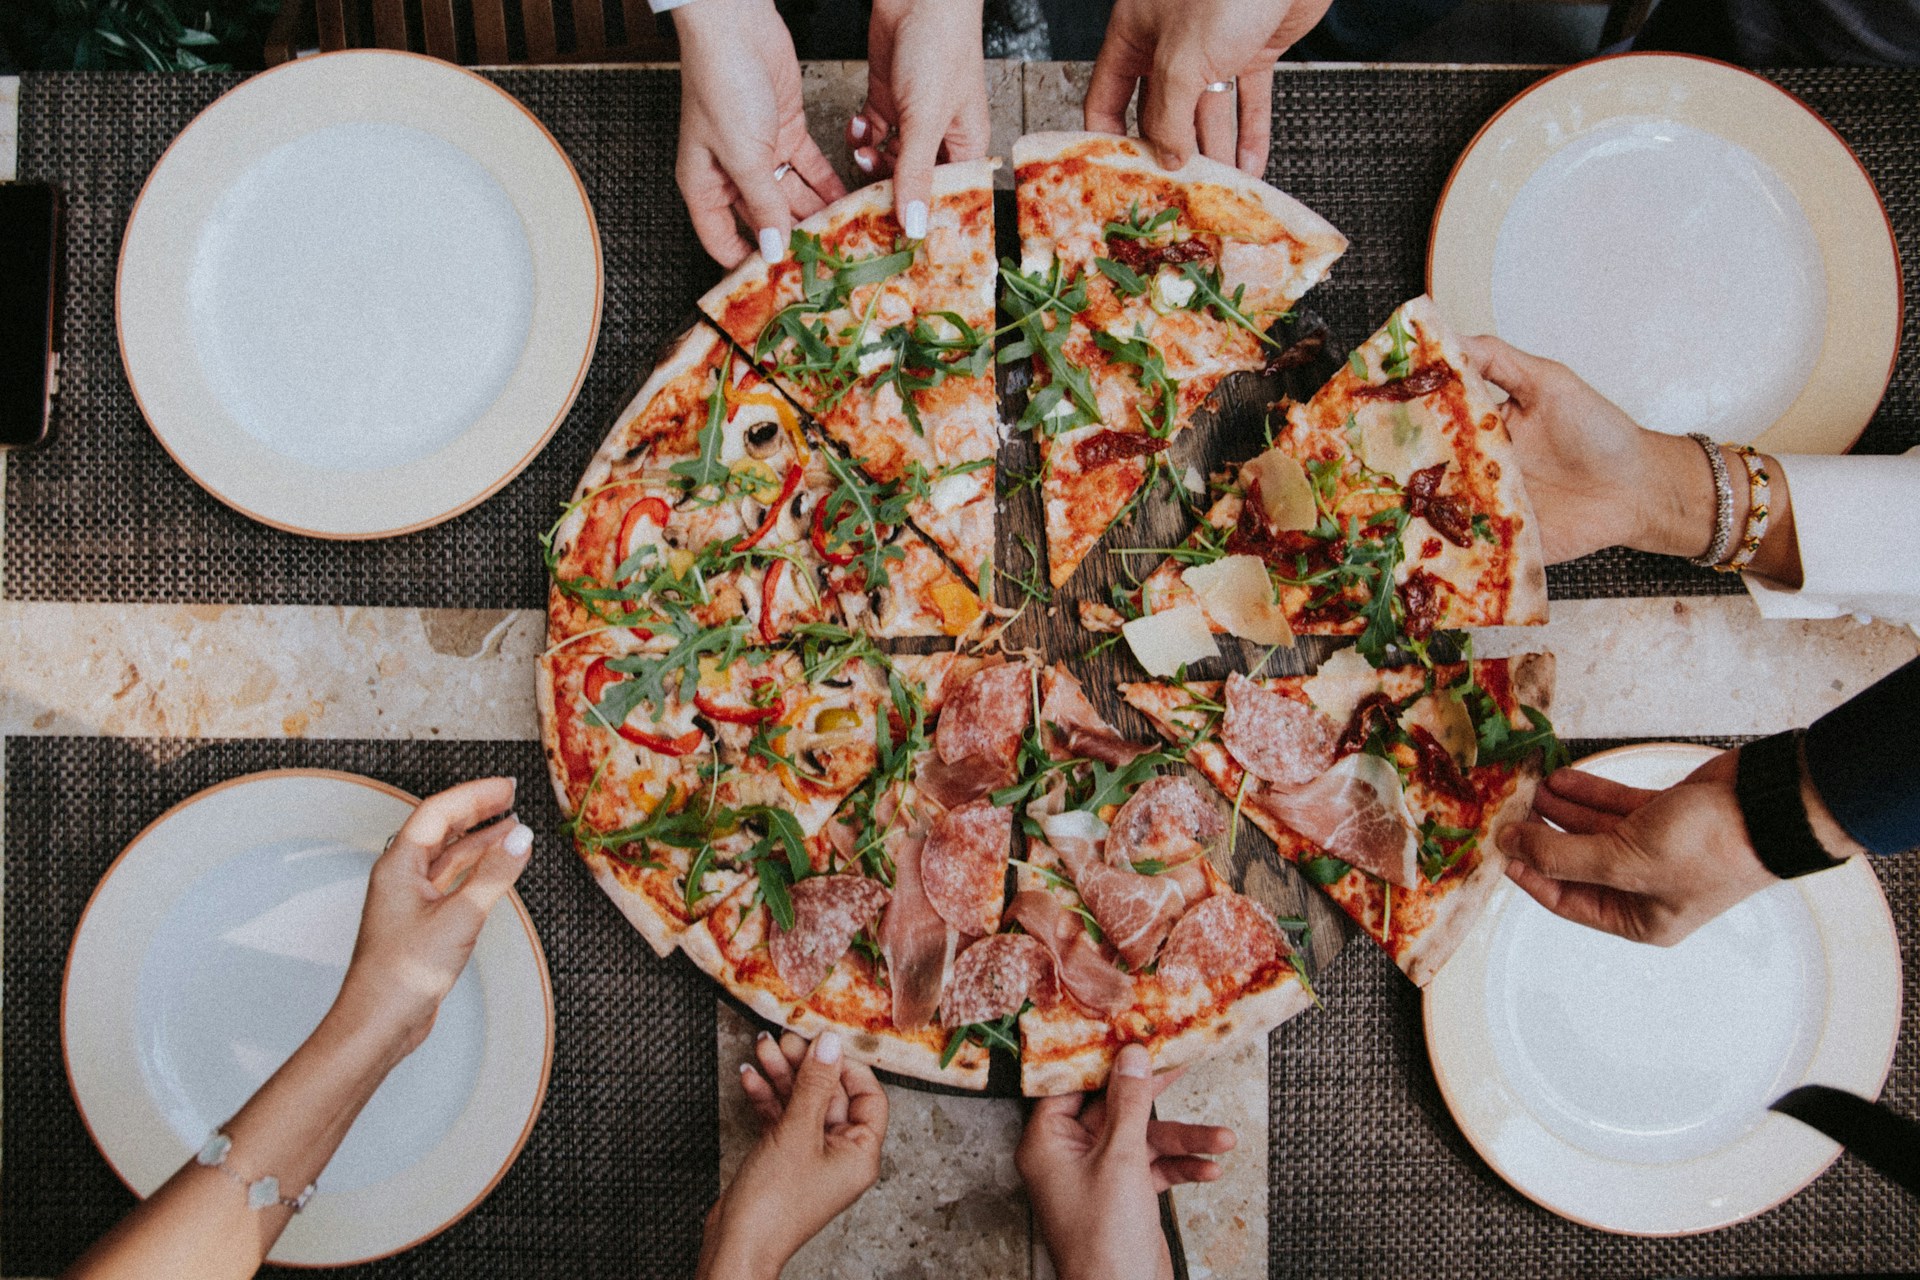 Quelle pizza est la moins calorique ?